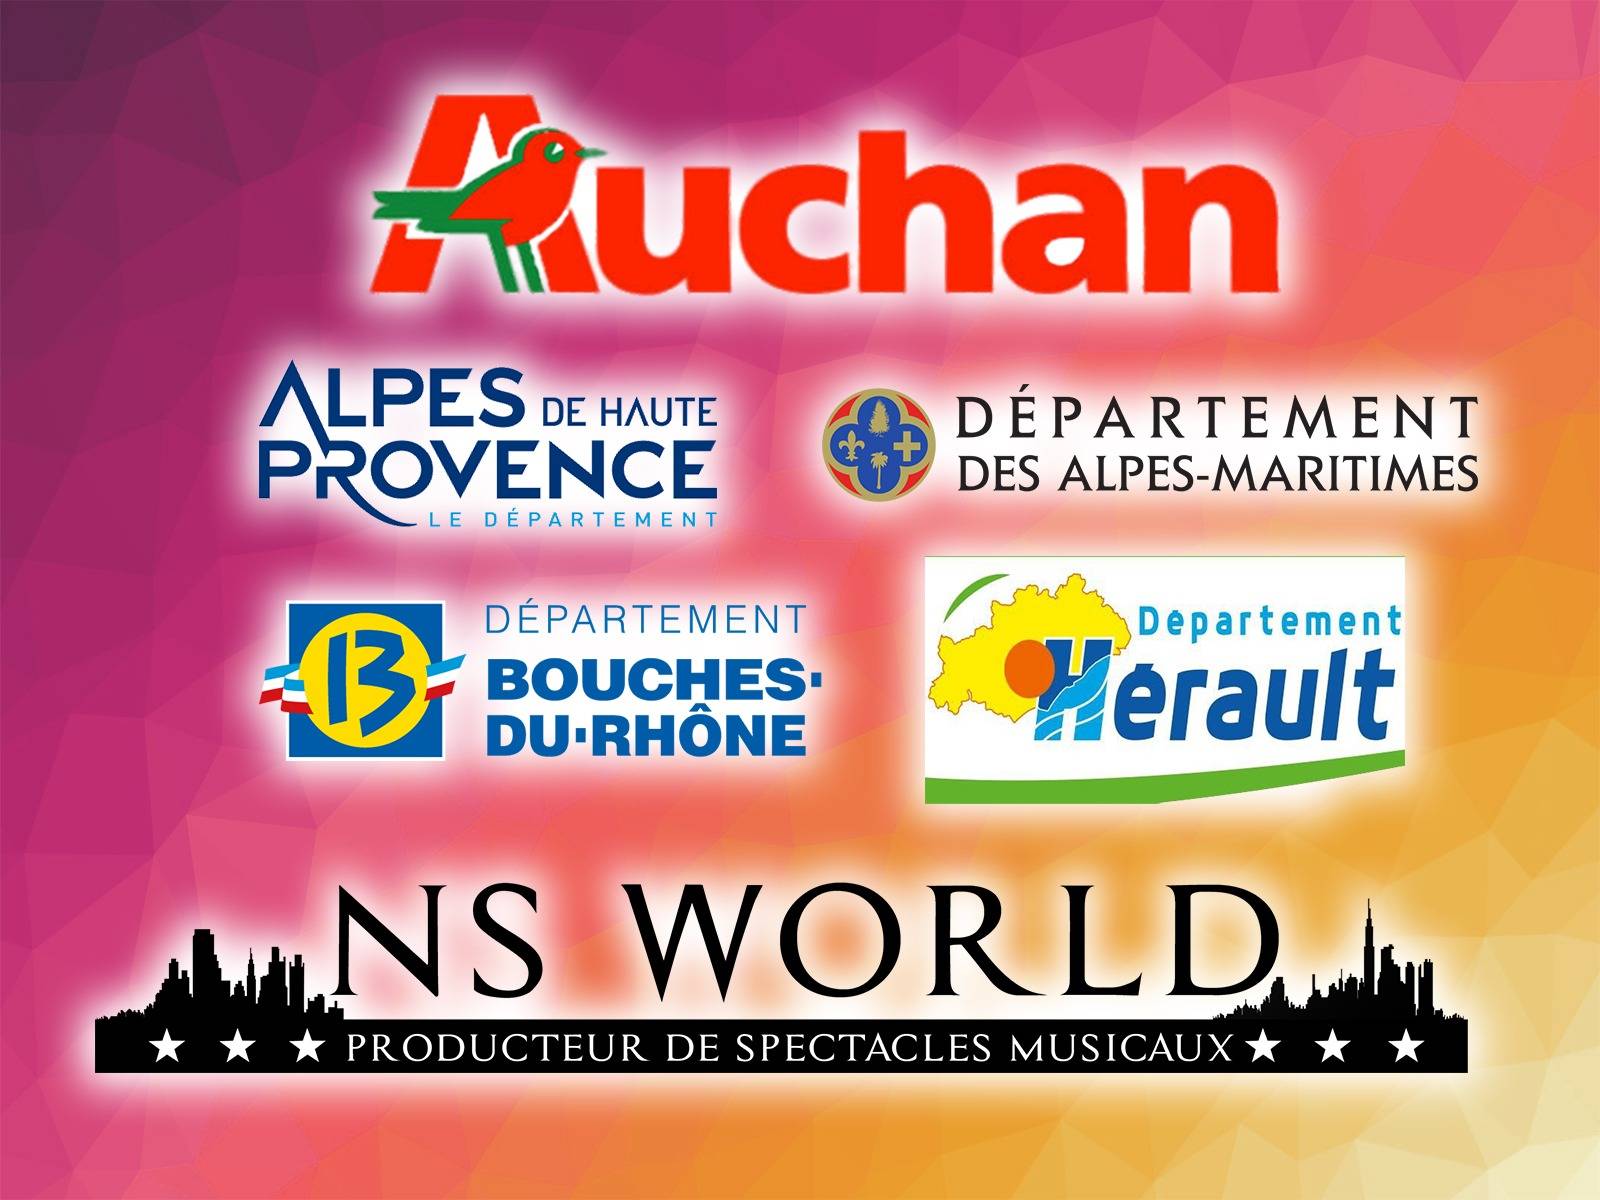 Des comédies musicales familiales pour les Auchan du sud-est de la France, Herault (34) Bouche du Rhone (13) Alpes de hautes Provence (04) Alpes maritimes (06)